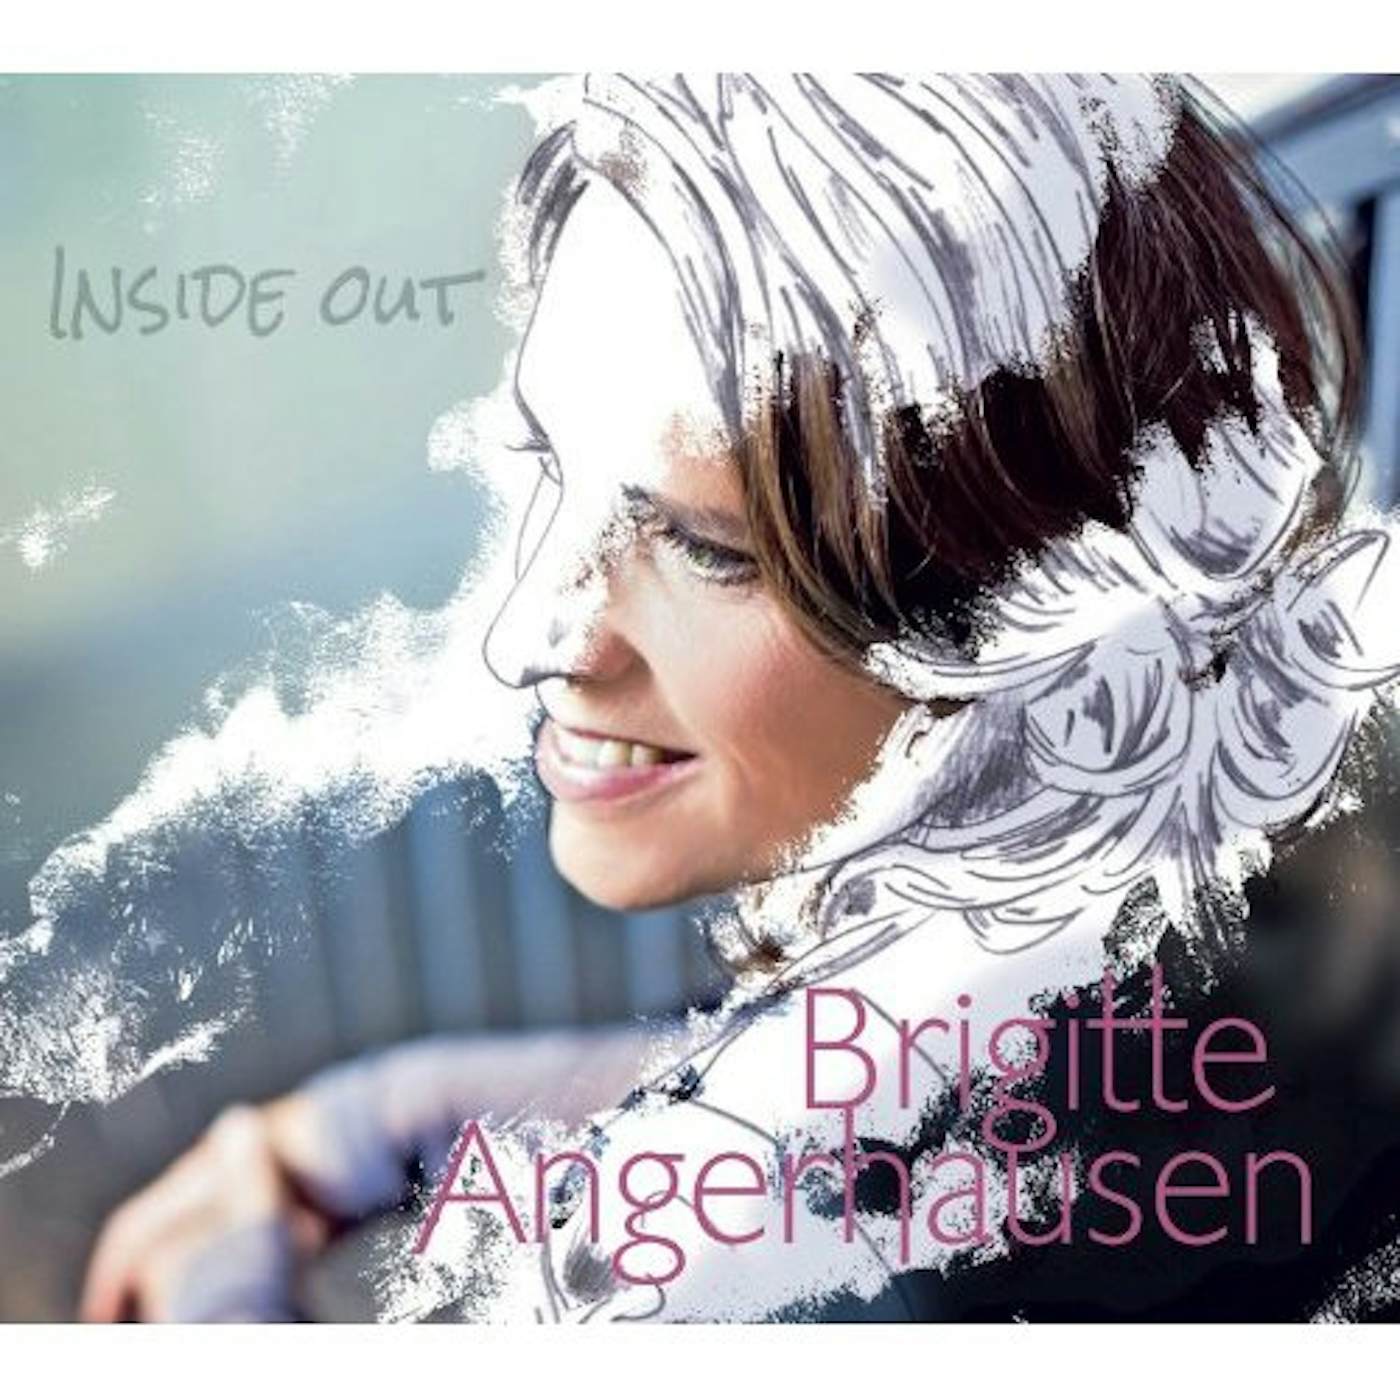 Brigitte Angerhausen INSIDE OUT CD